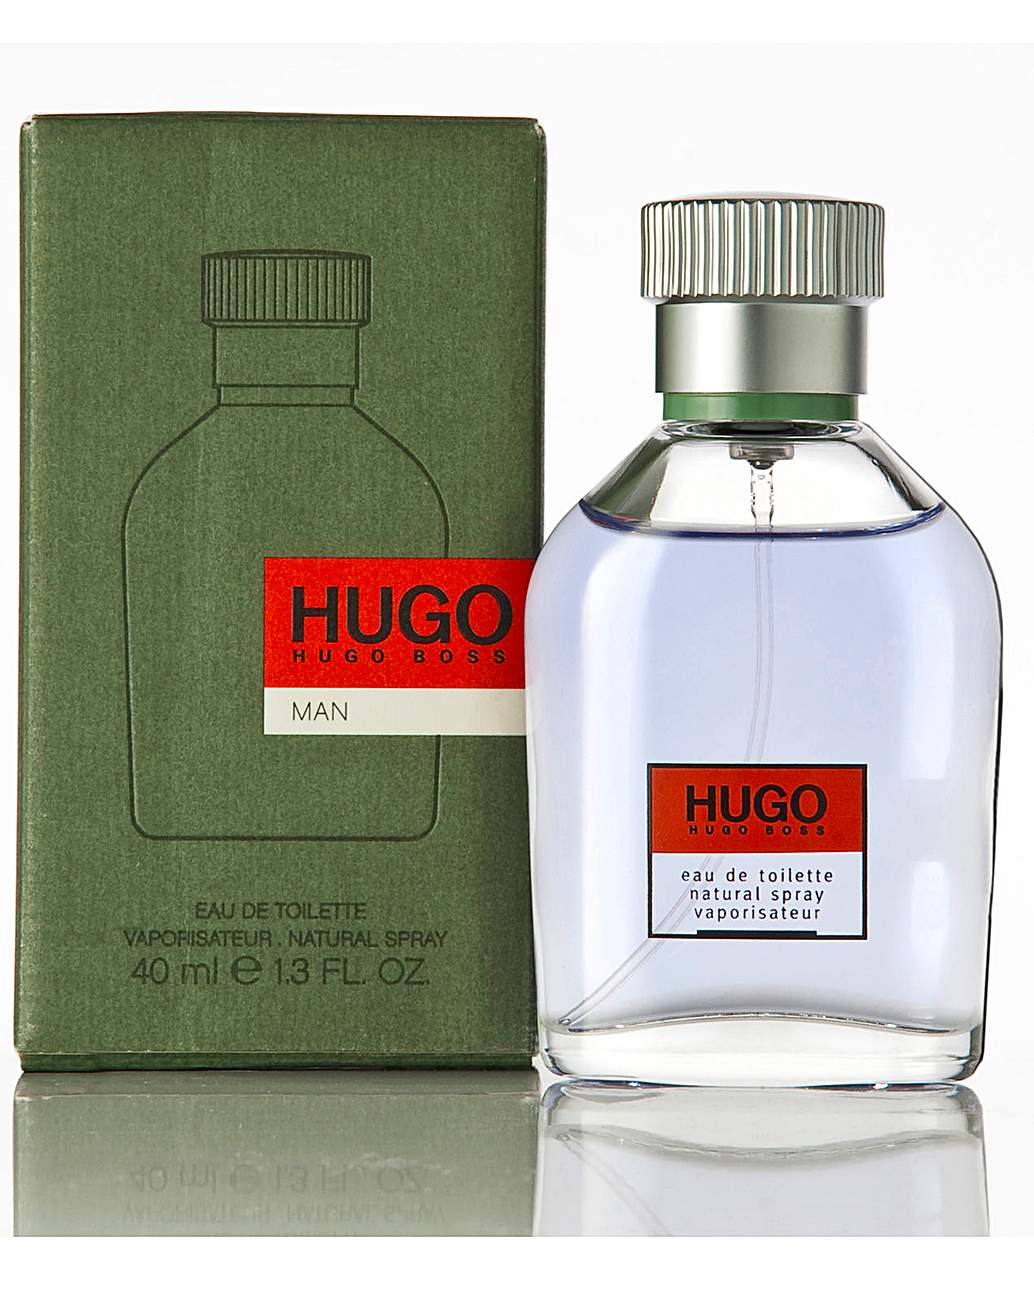 hugo boss skin care